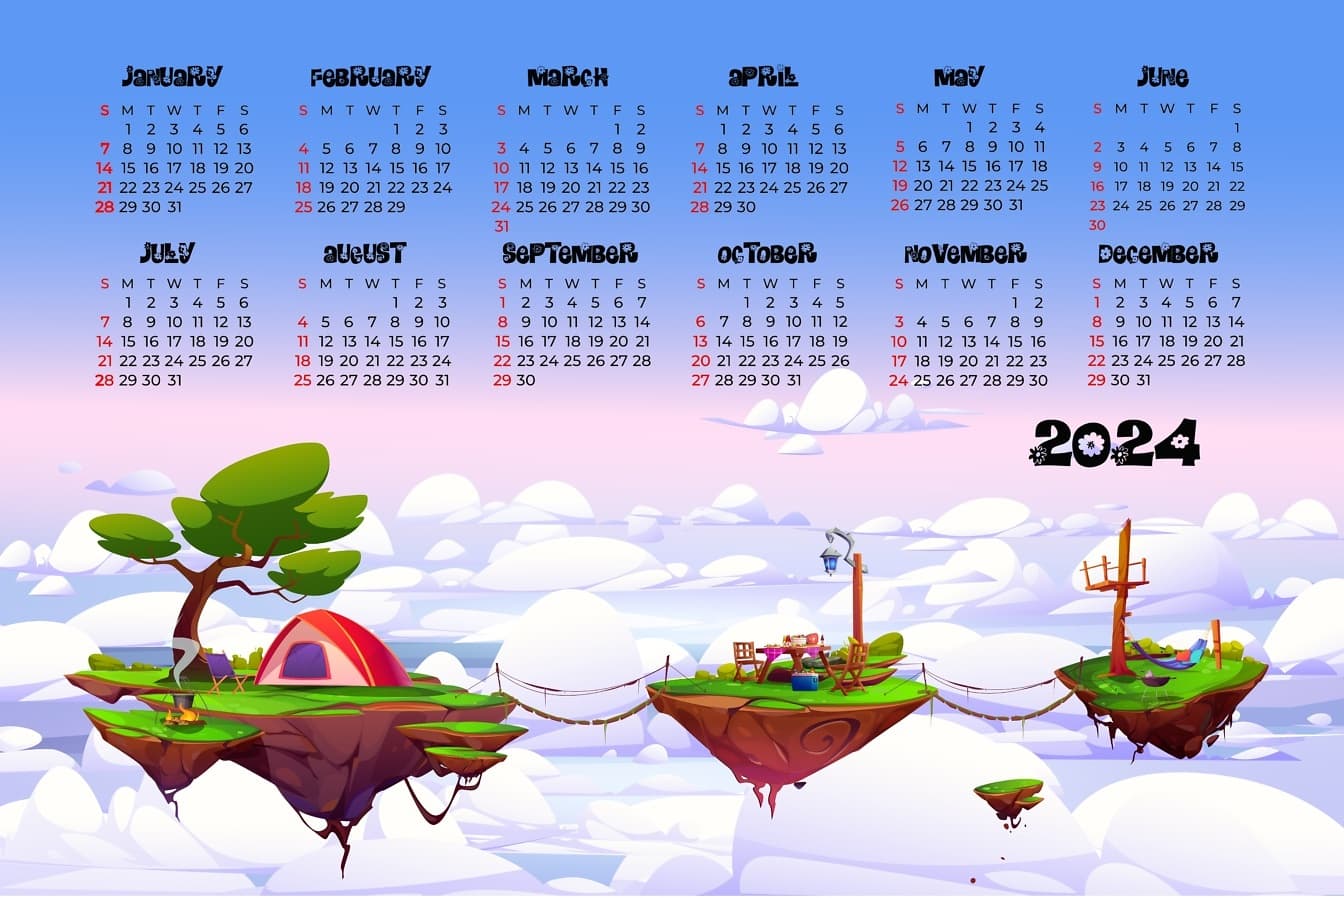 Kalendarz na rok 2024 z kreskówkową ilustracją trzech pływających wysp